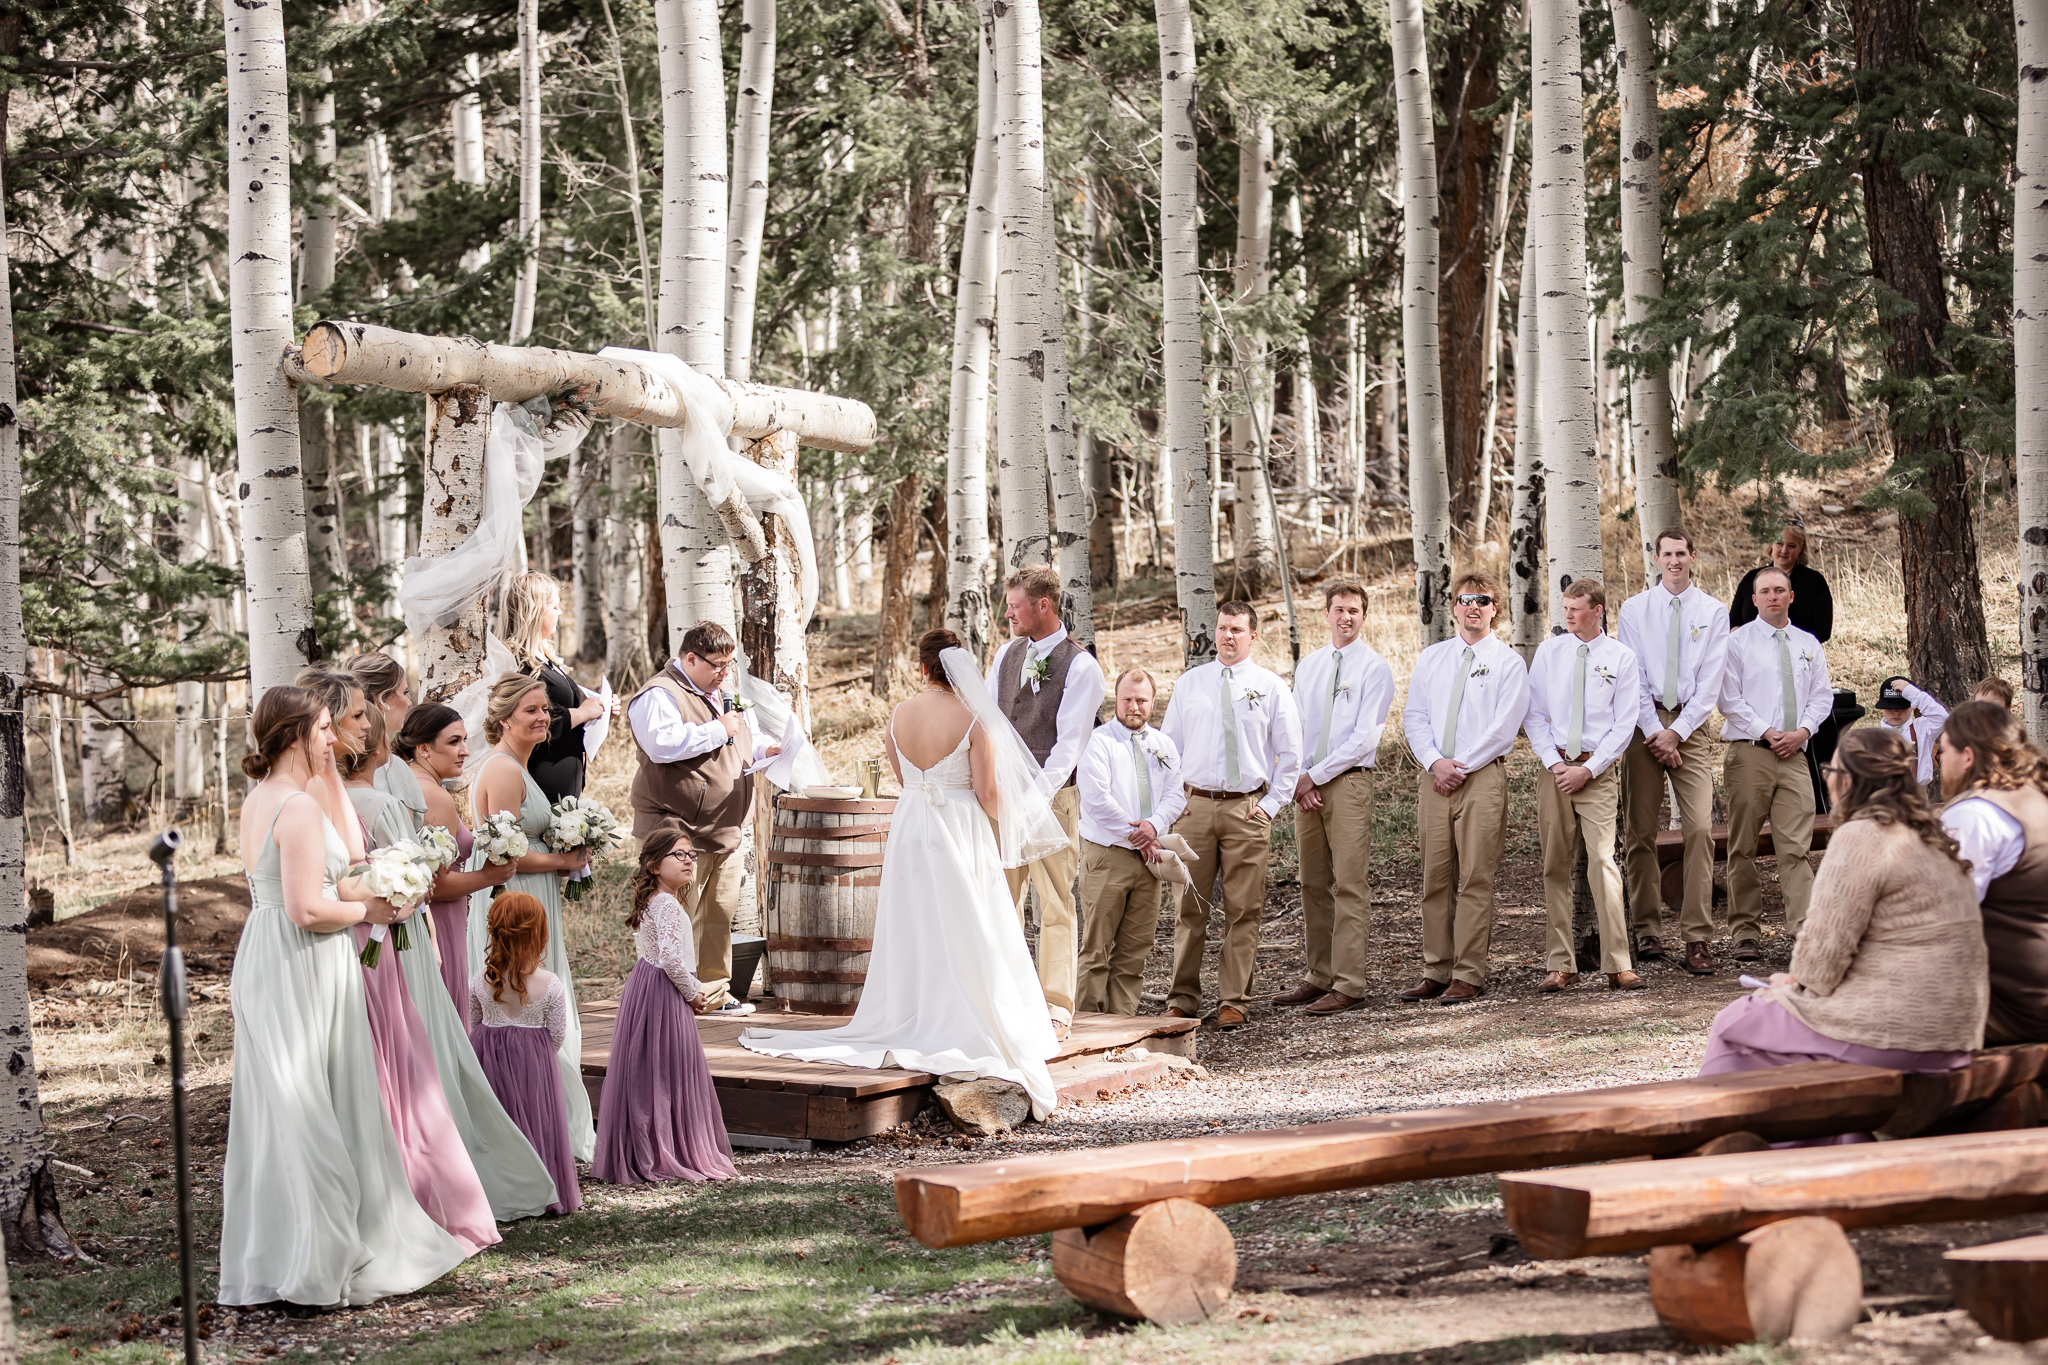 Deer Creek Mountain Camp wedding venue in Bailey Colorado | Dahli Floral | Cottage Creations Custom Confections 
 Elite Beauty Co | Magnifica Bella | Mountain wedding venue